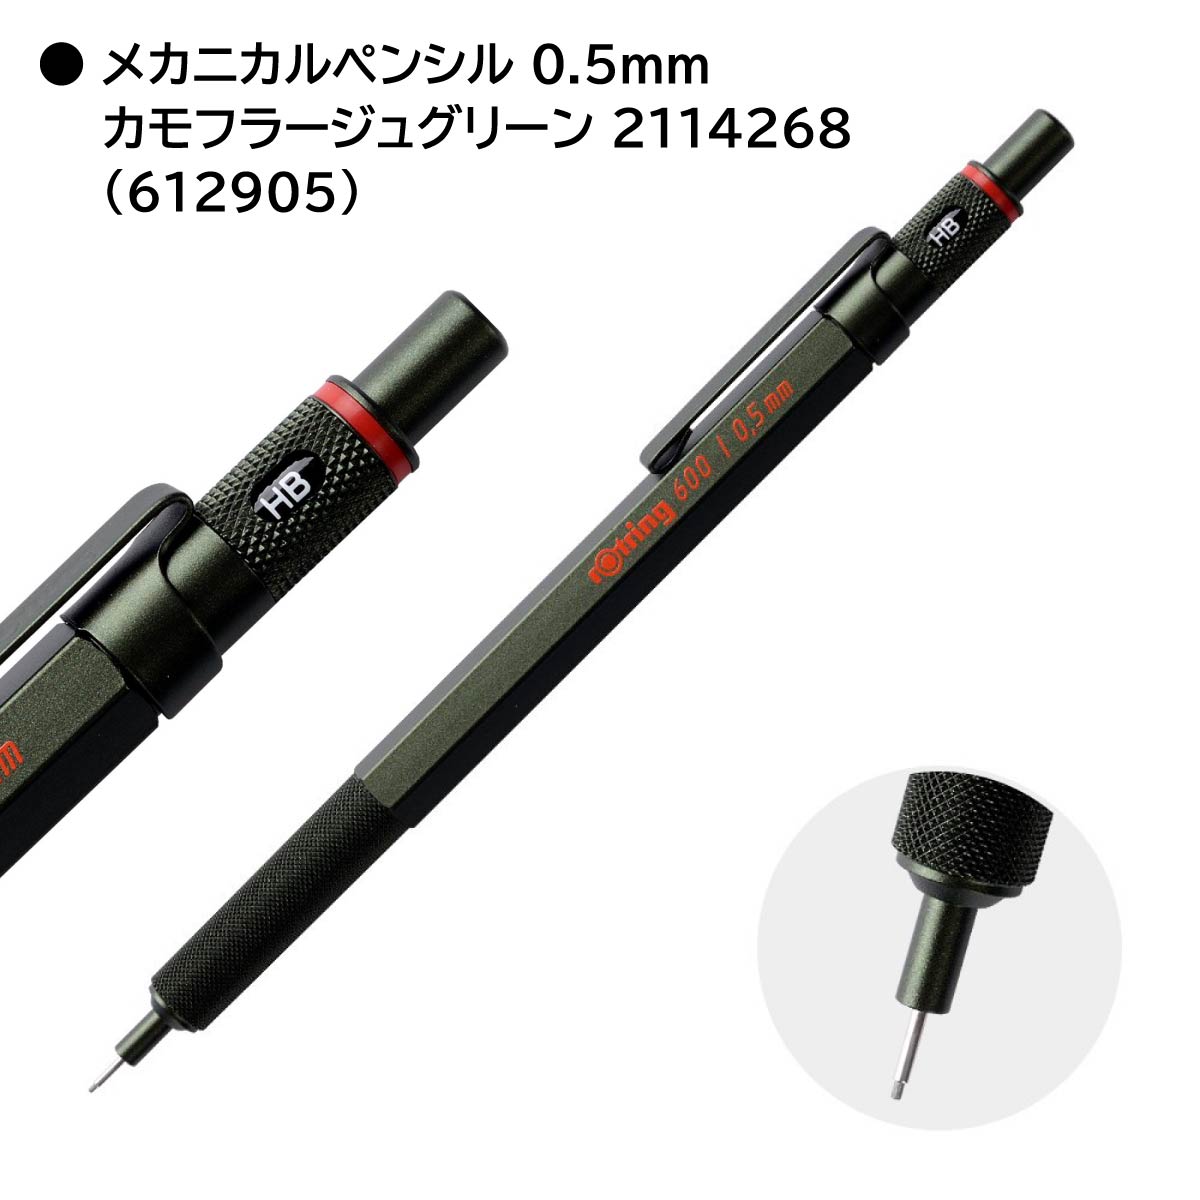 ロットリング 製図用シャープペン ボールペン 600シリーズ(メカニカル